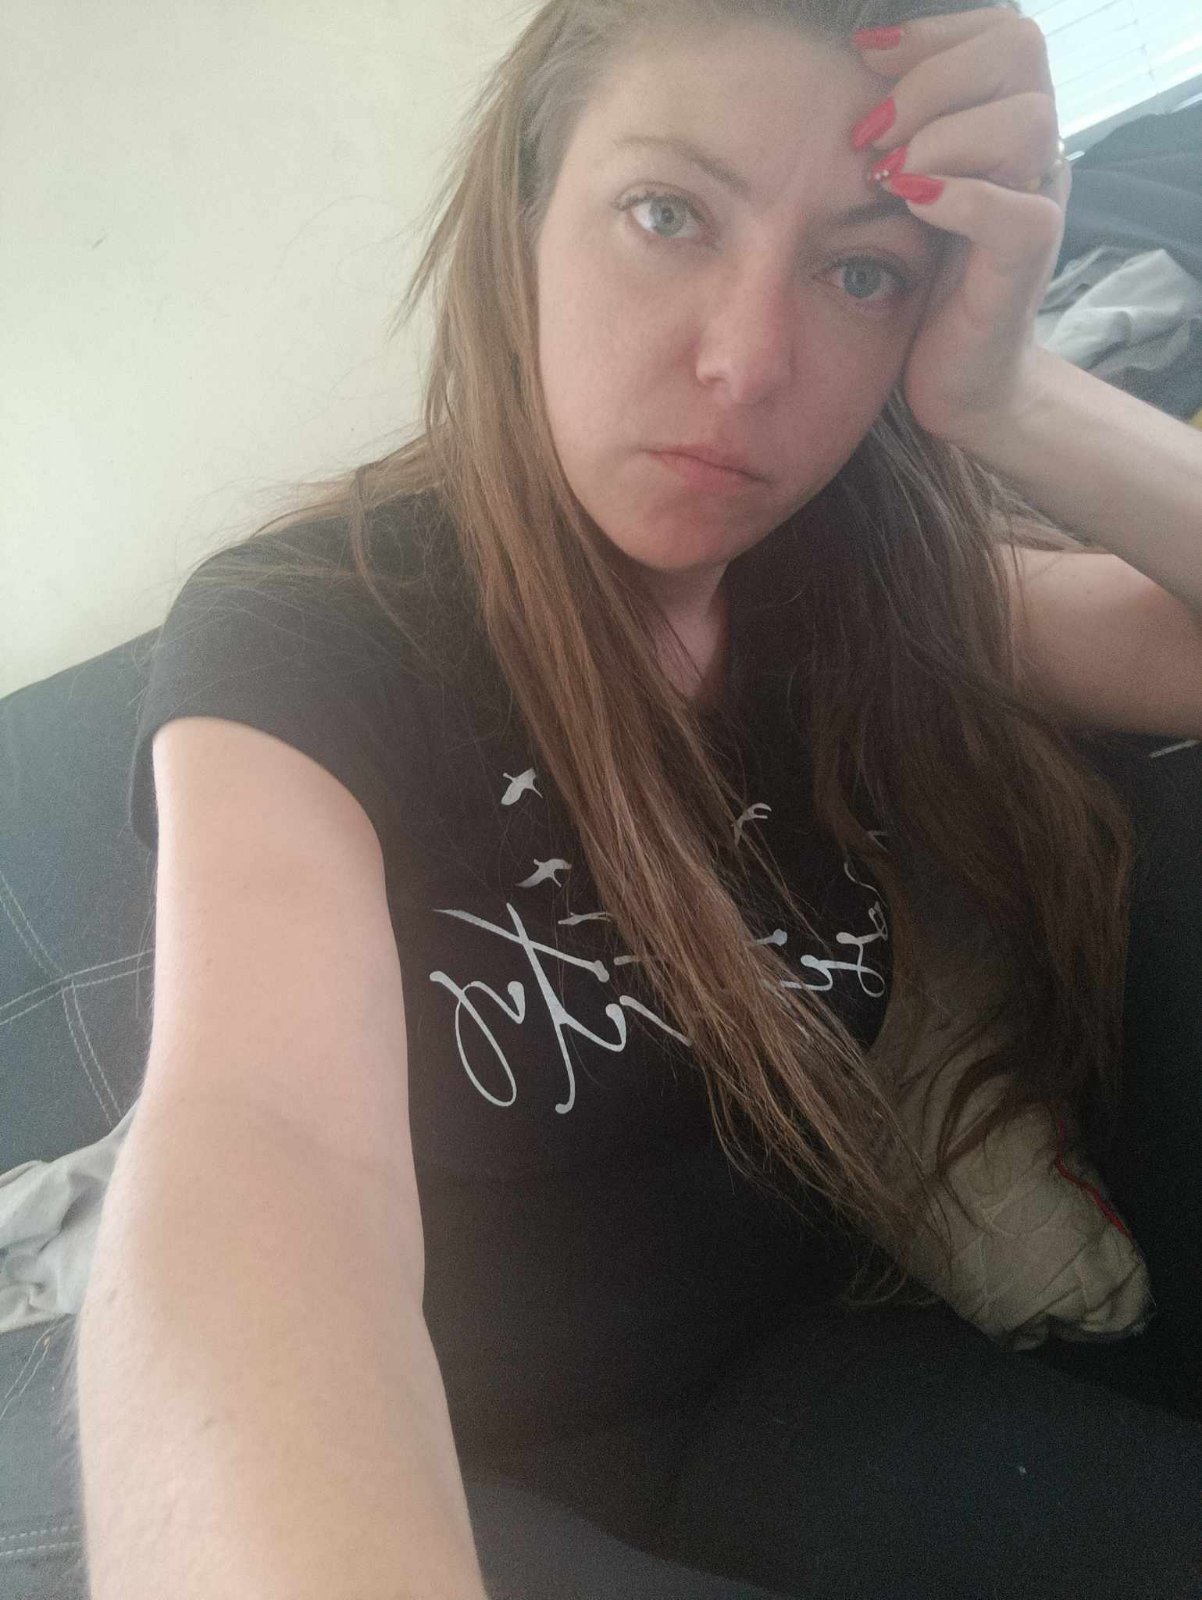 Търси се! 28-годишната Кристин Иванова от Благоевград изчезна безследно